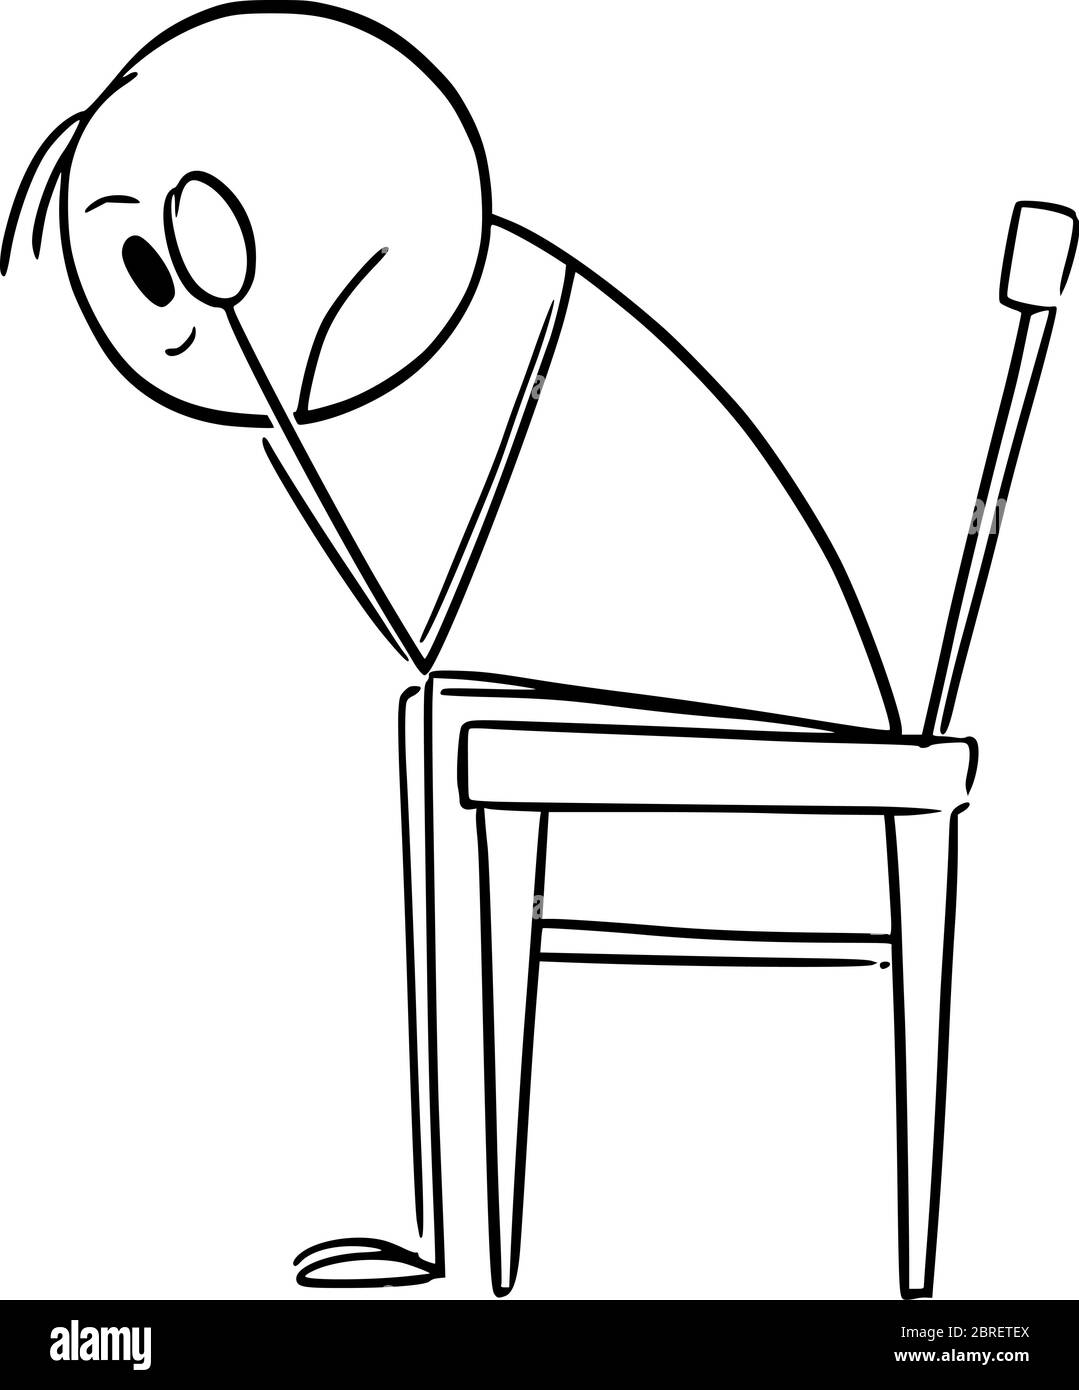 Grafico vettoriale del cartone grafico disegno concettuale di uomo depresso o triste in stress con testa in mani seduta sulla sedia. Illustrazione Vettoriale